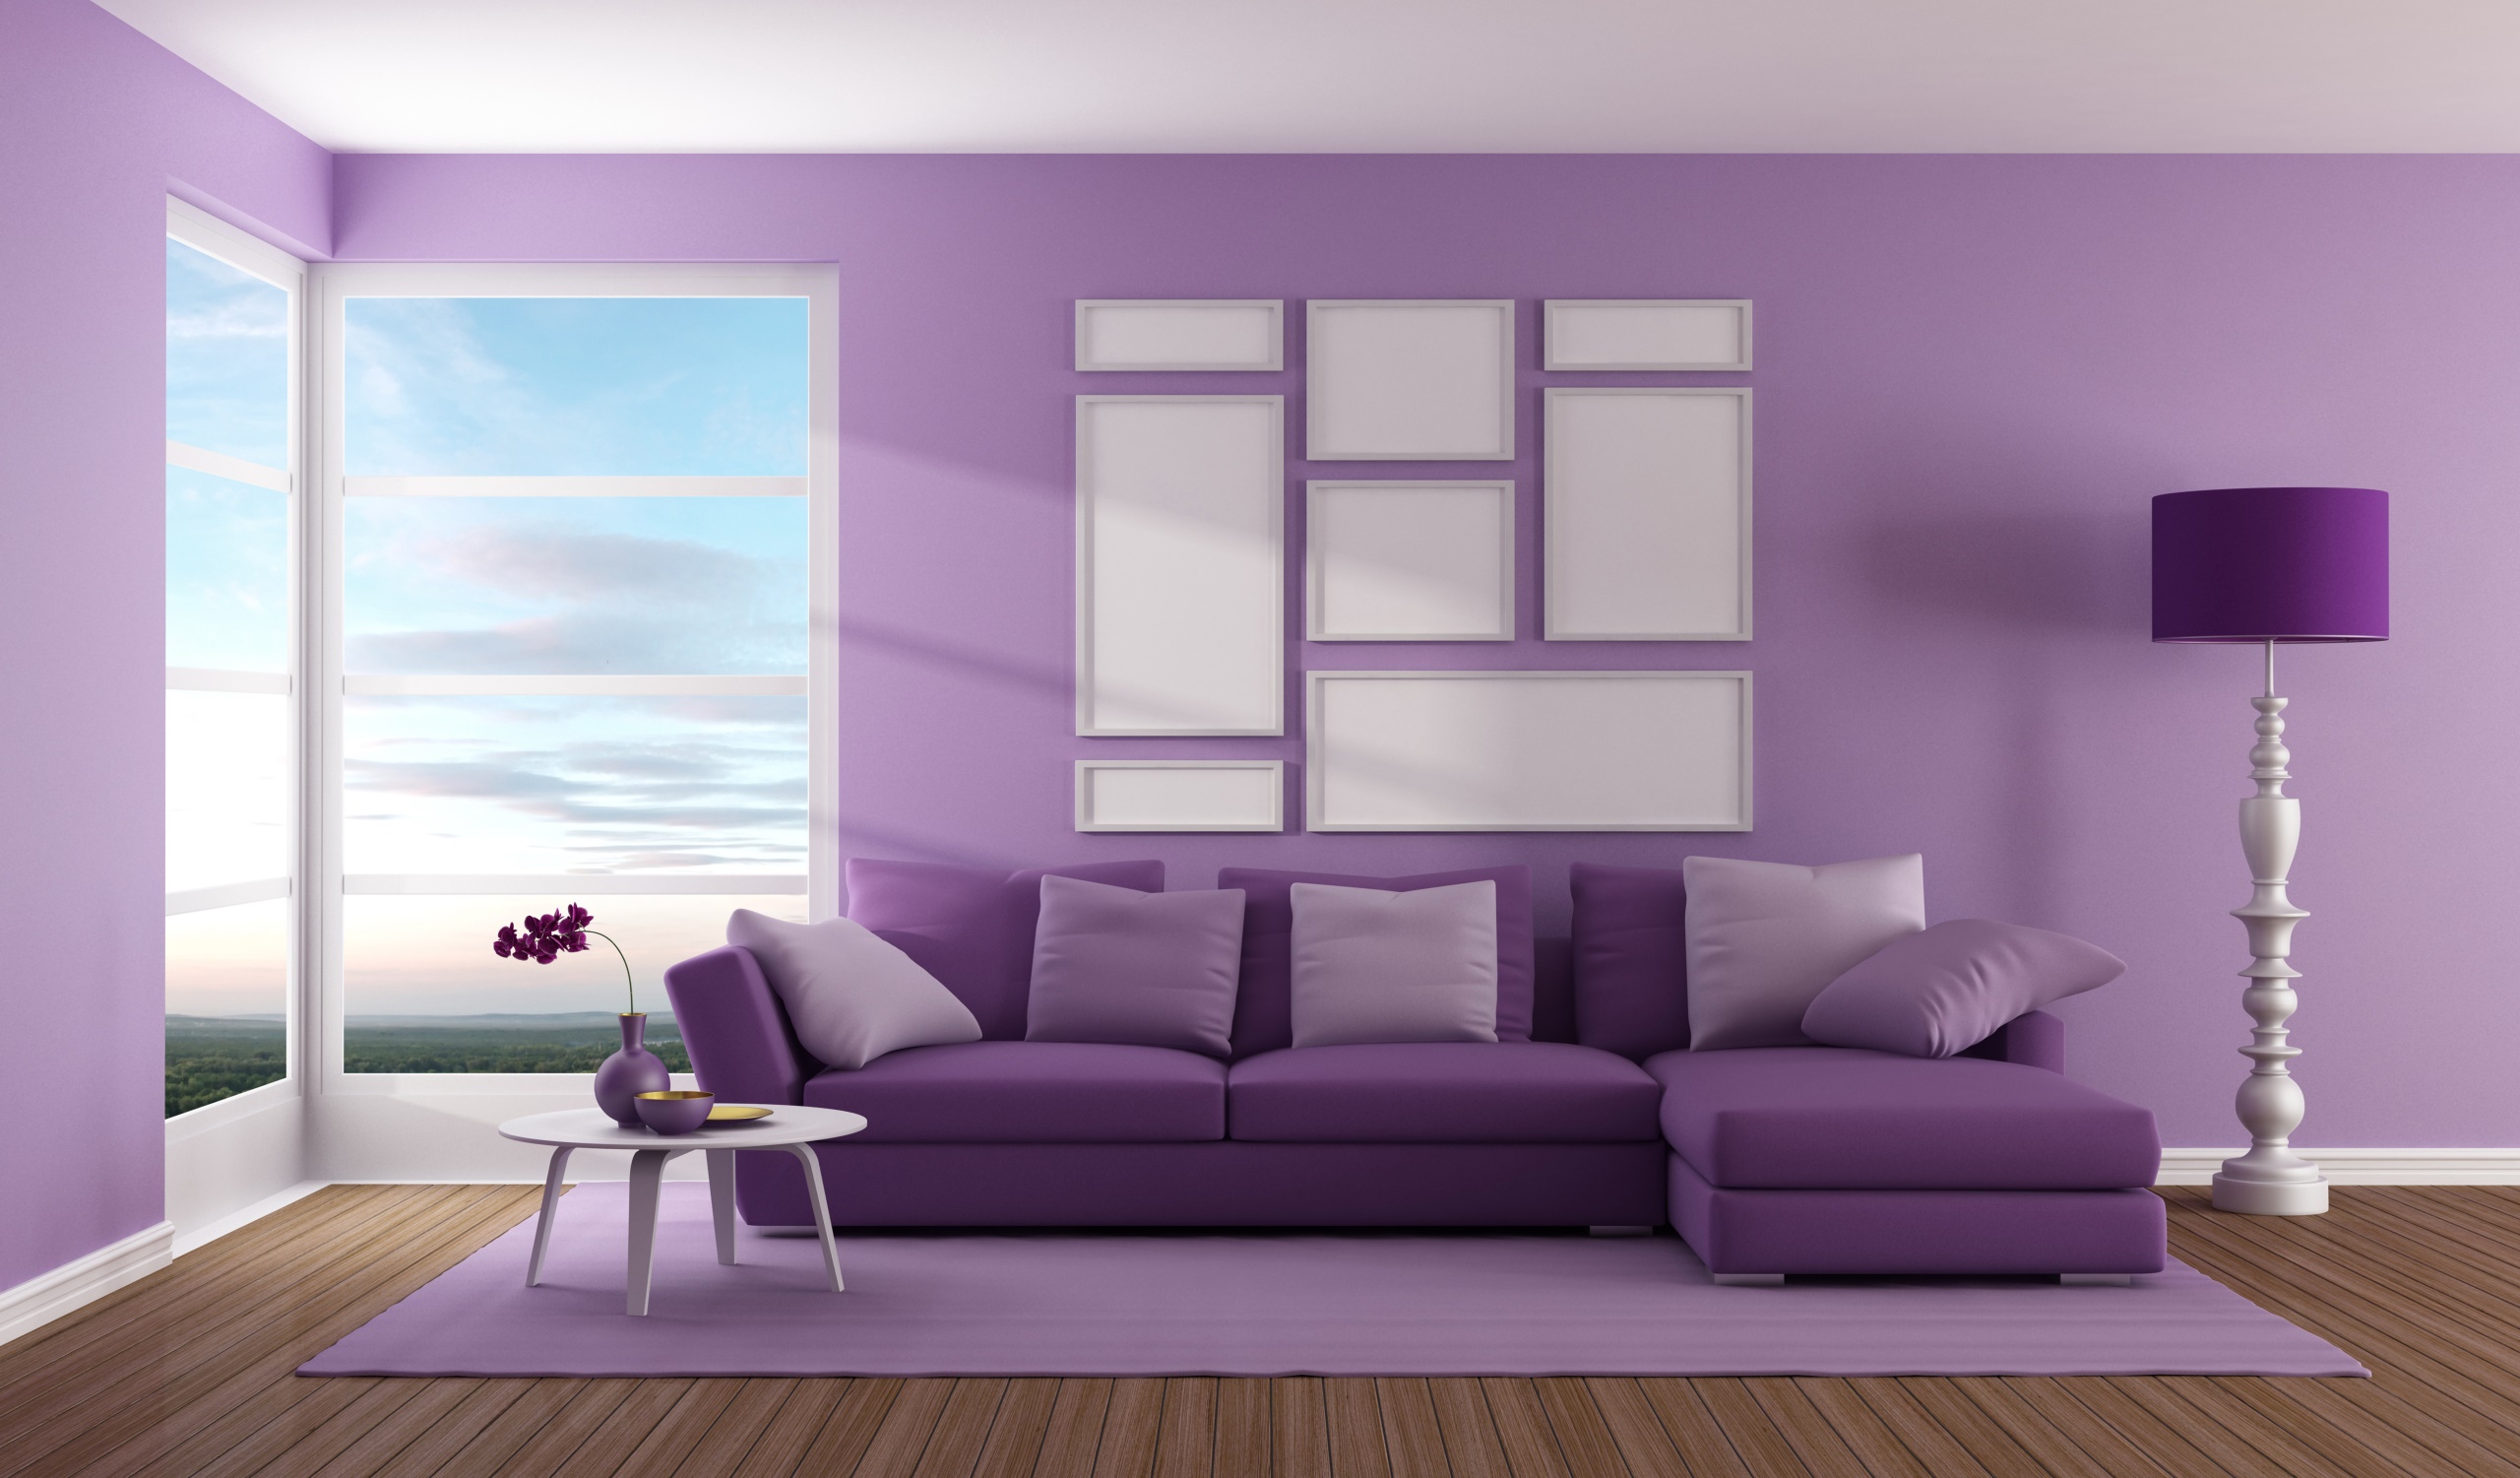 General 2560x1501 purple interior interior design CGI digital art